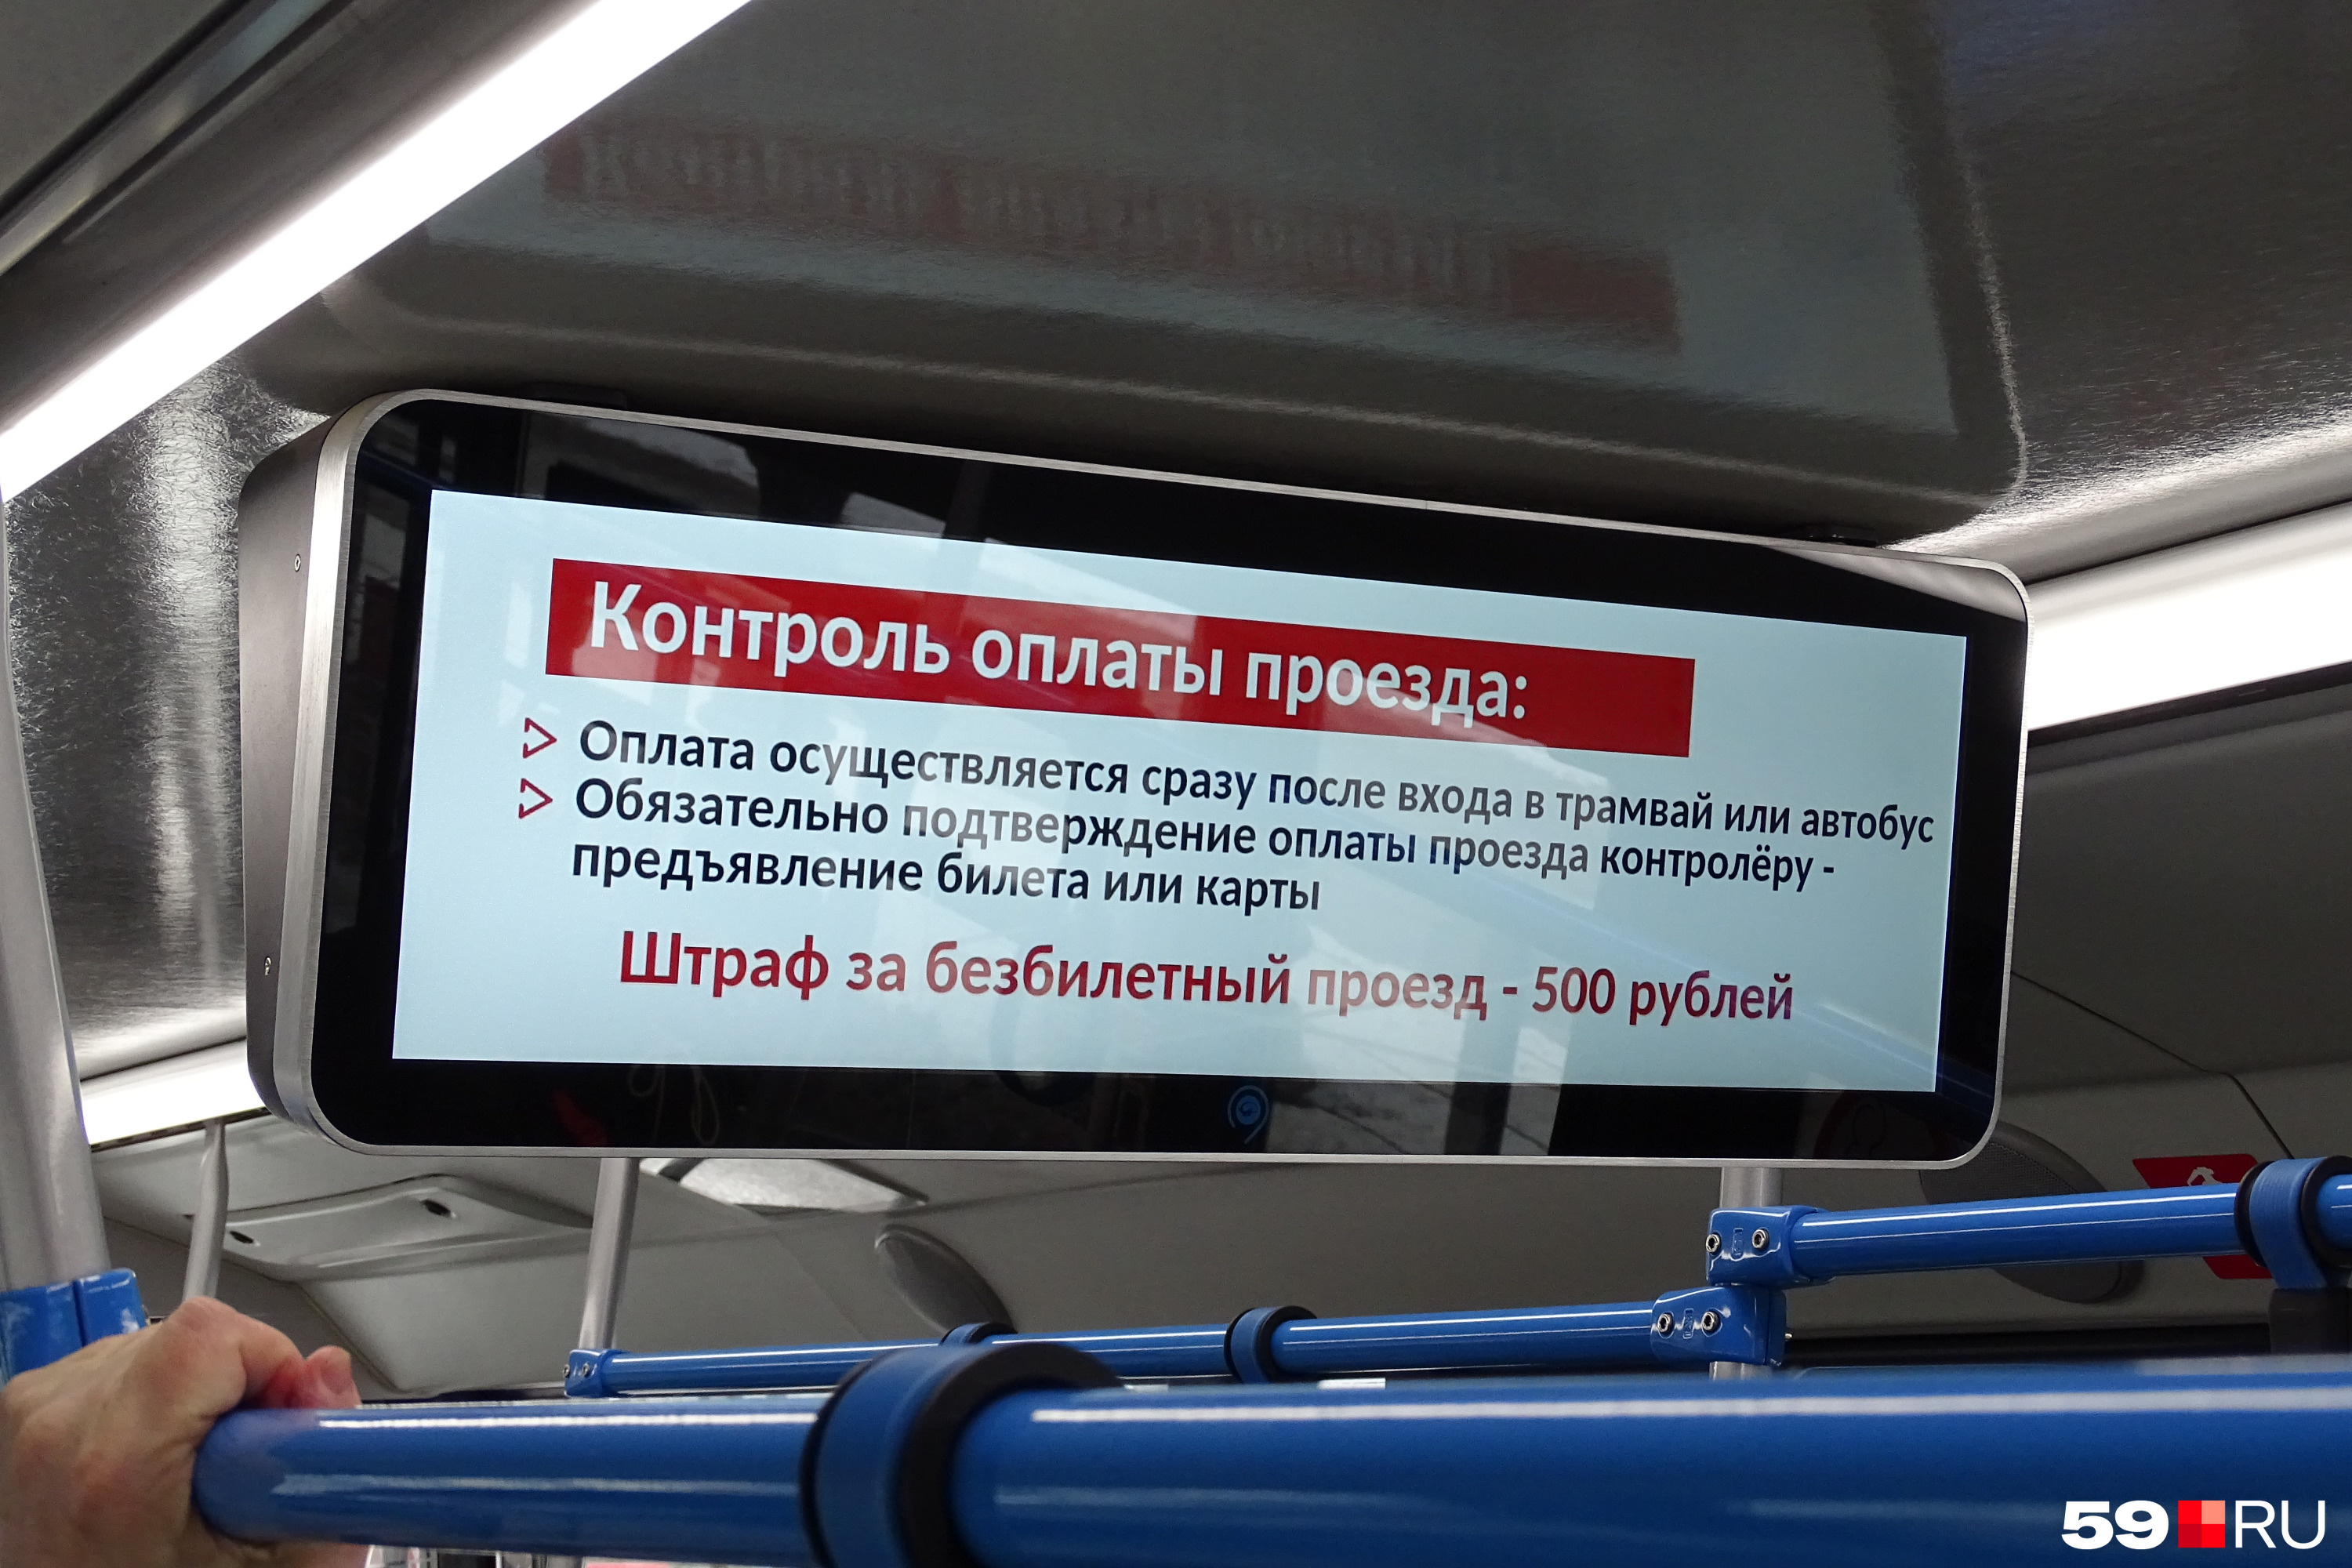 Сколько штраф за безбилетный проезд в москве